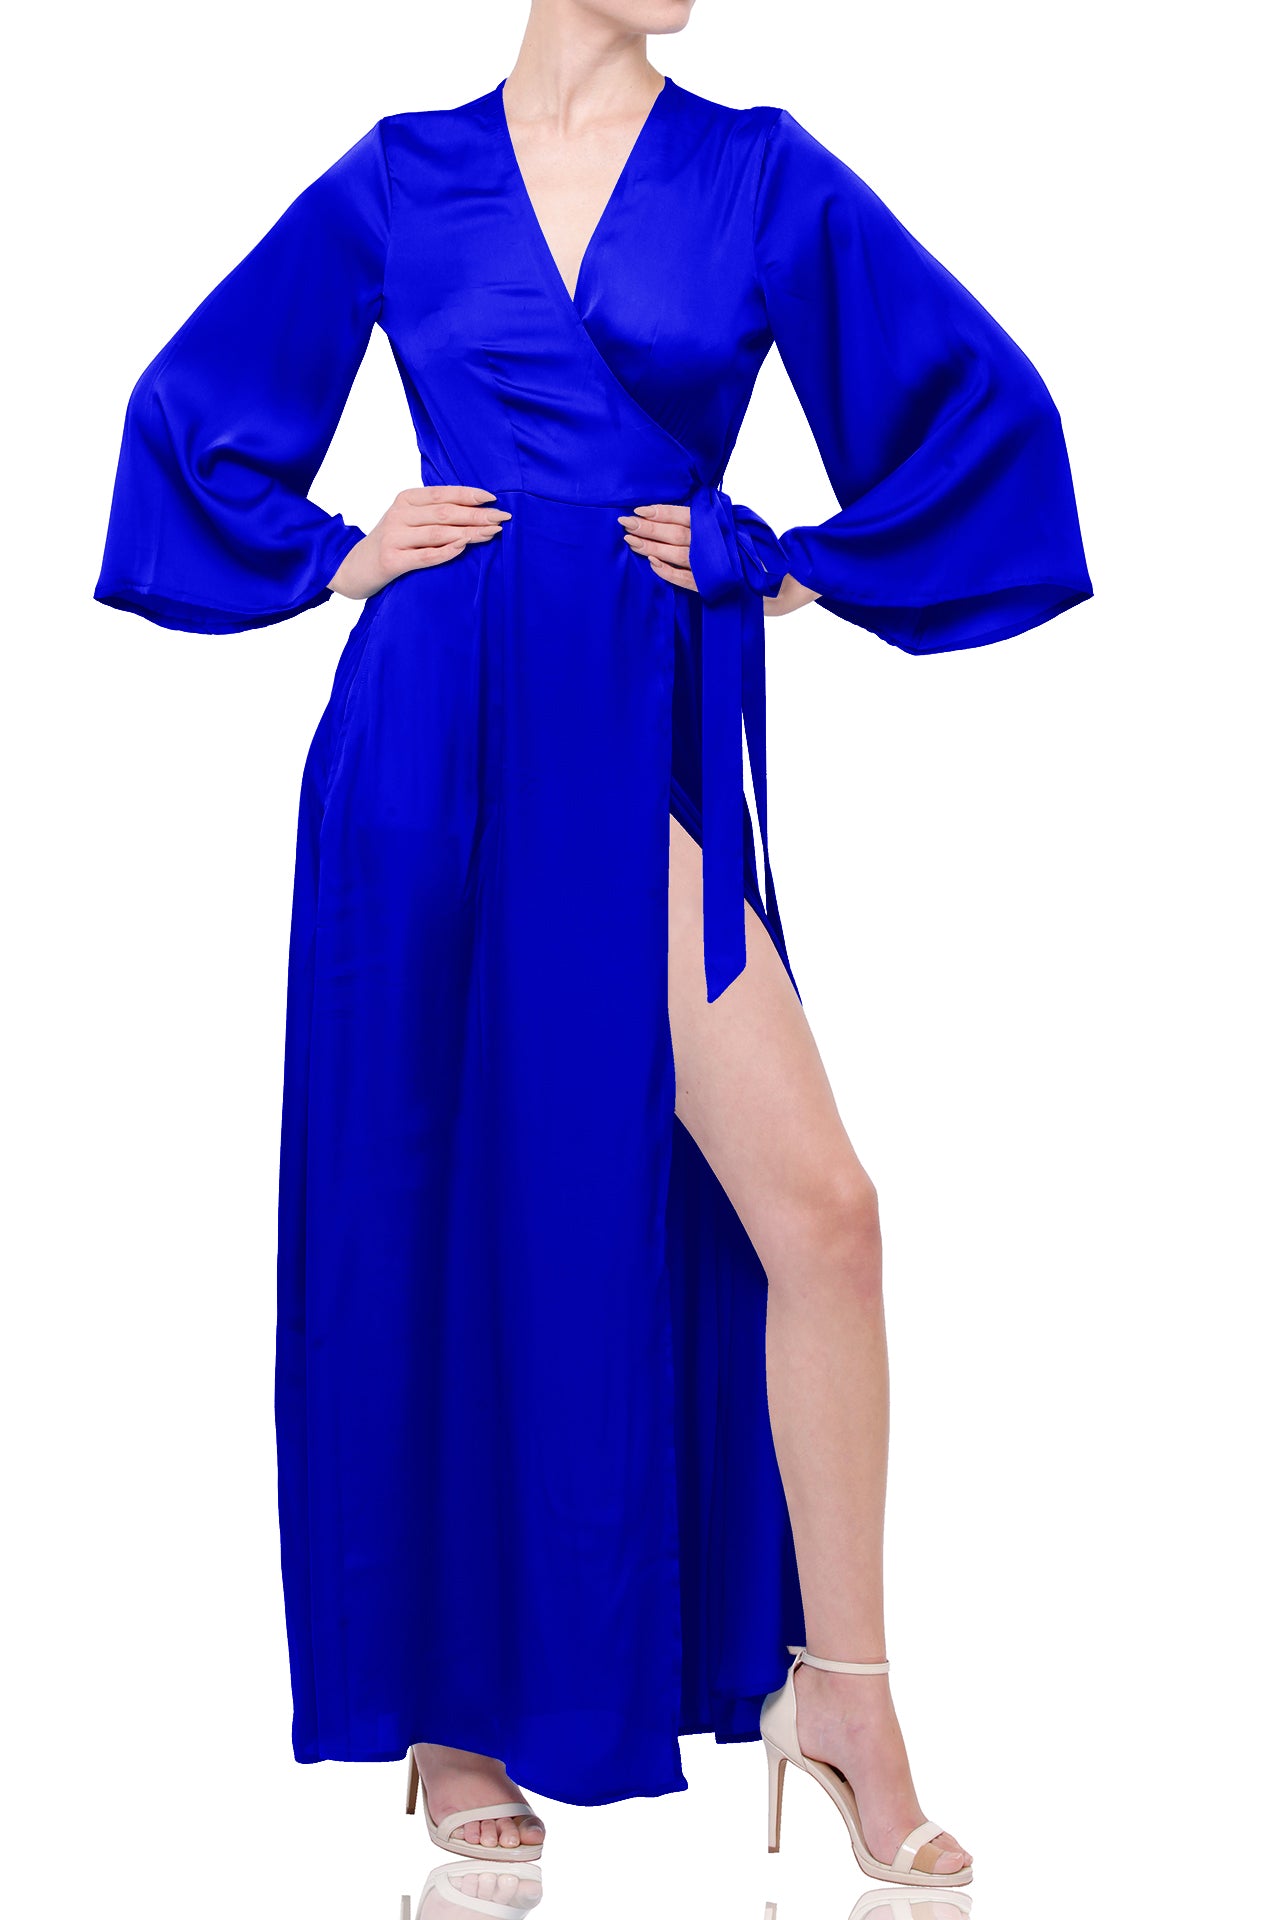 Solid Blue Designer Long Wrap Dress